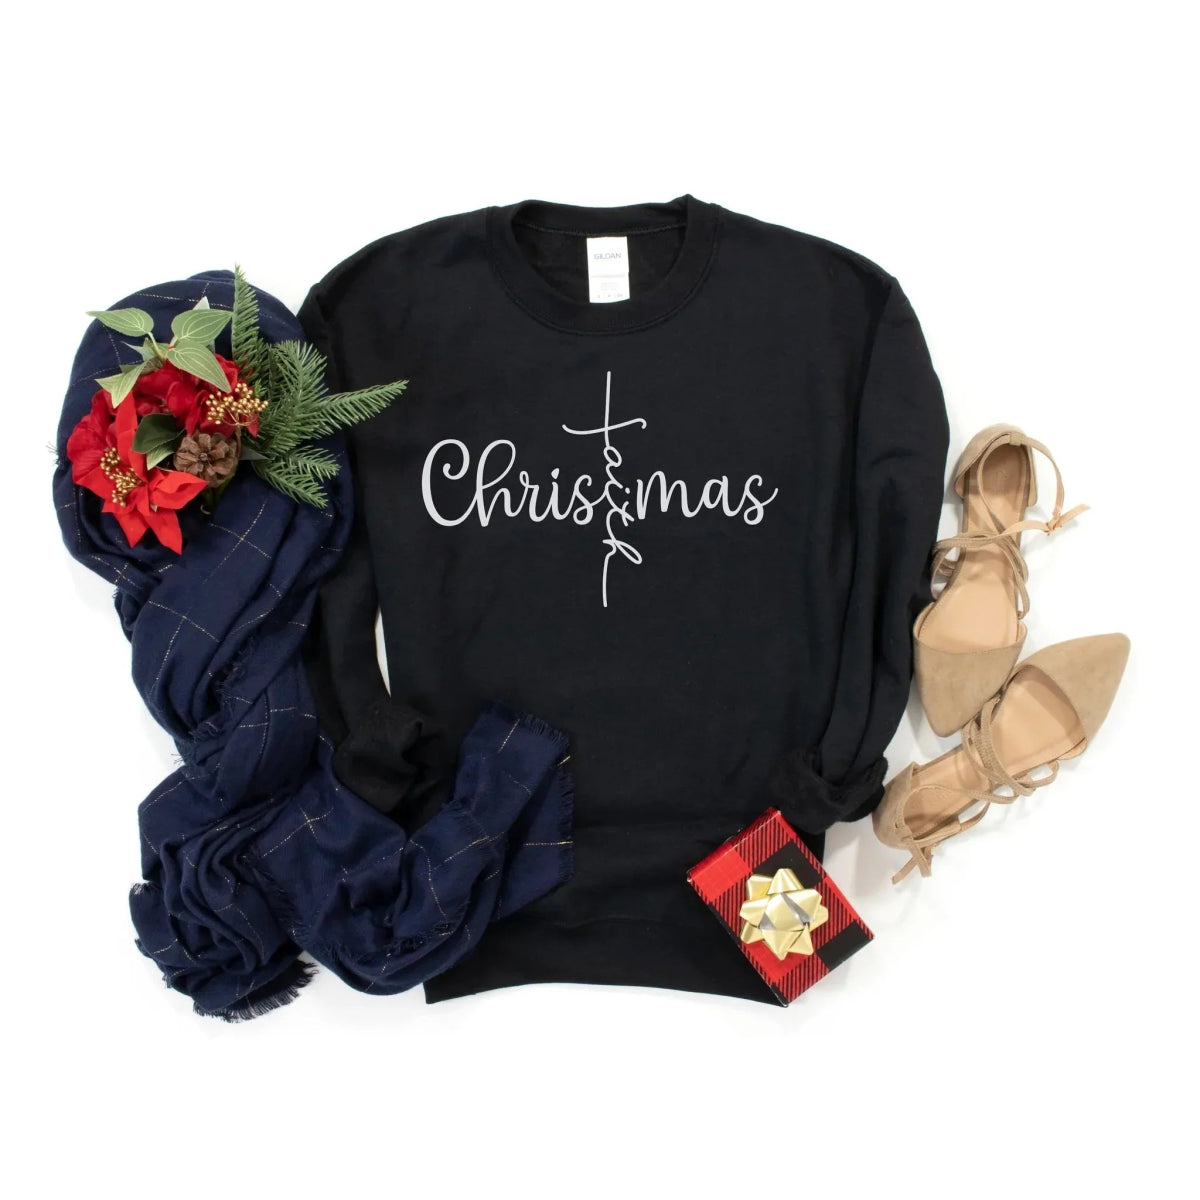 Christmas Faith Sweatshirt/tee options. - worldclasscostumes